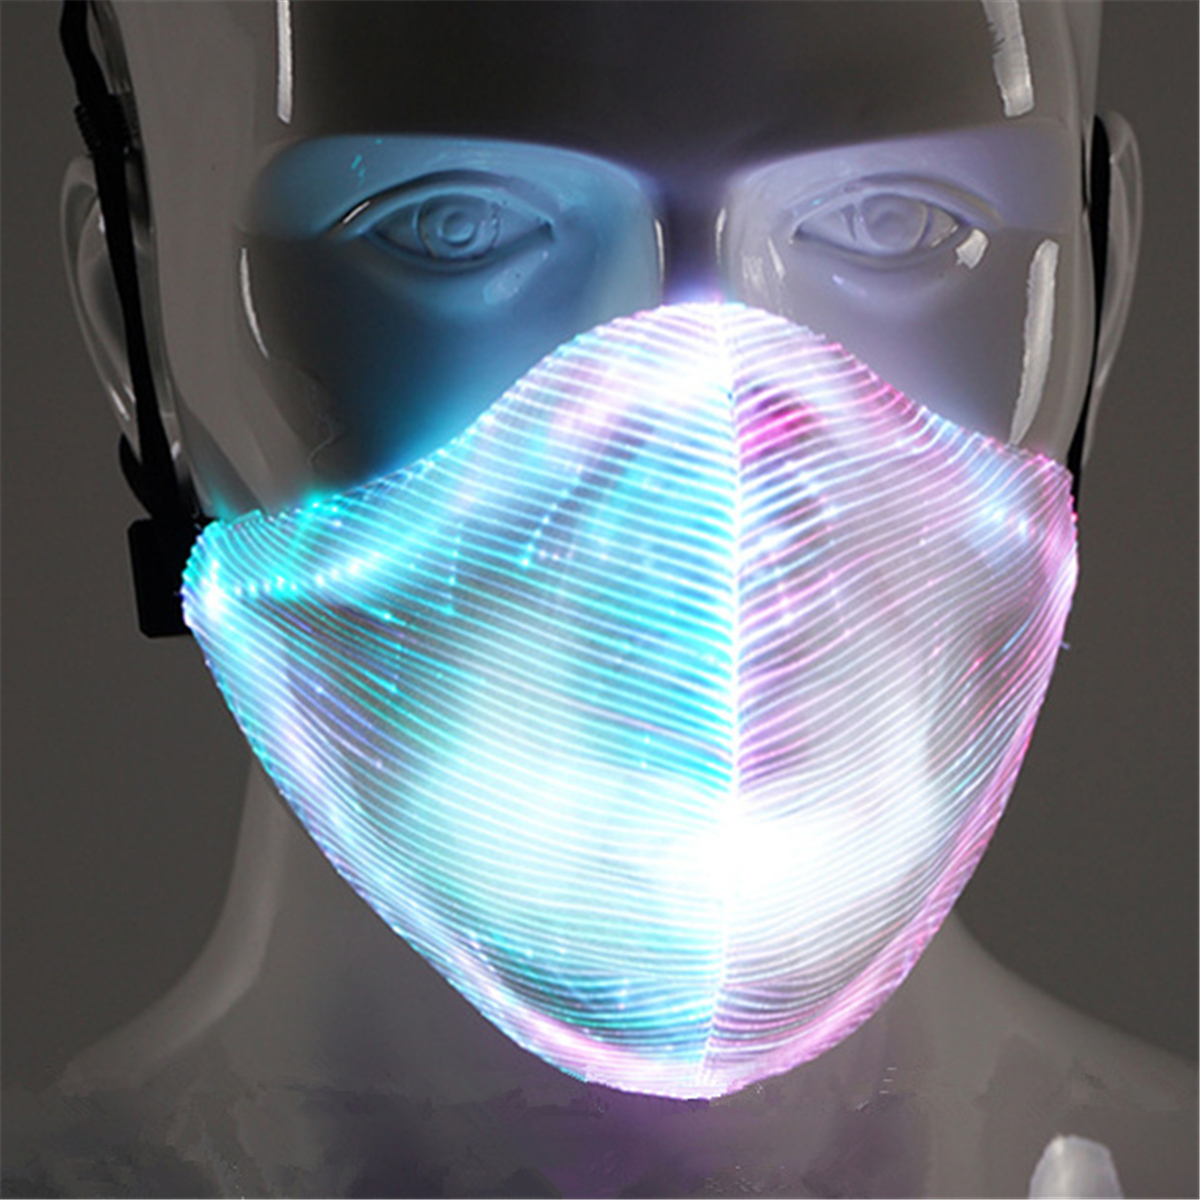 7-Color-LED-Light-Dust-Haze-Face-Mask-DJ-Party-RaveHip-hop-Dance-Stage-COS-1408518